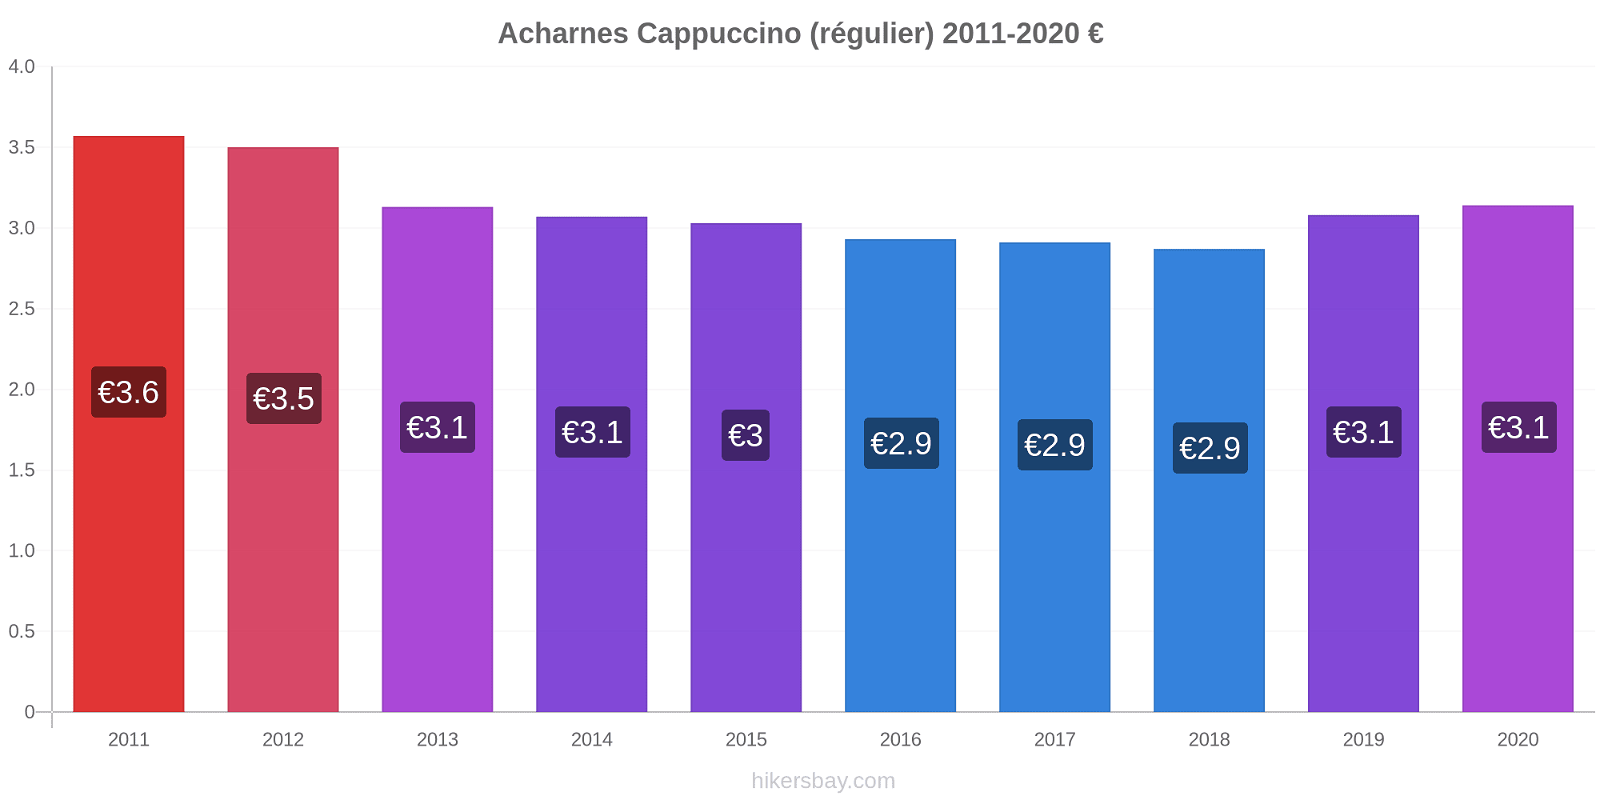 Acharnes changements de prix Cappuccino (régulier) hikersbay.com